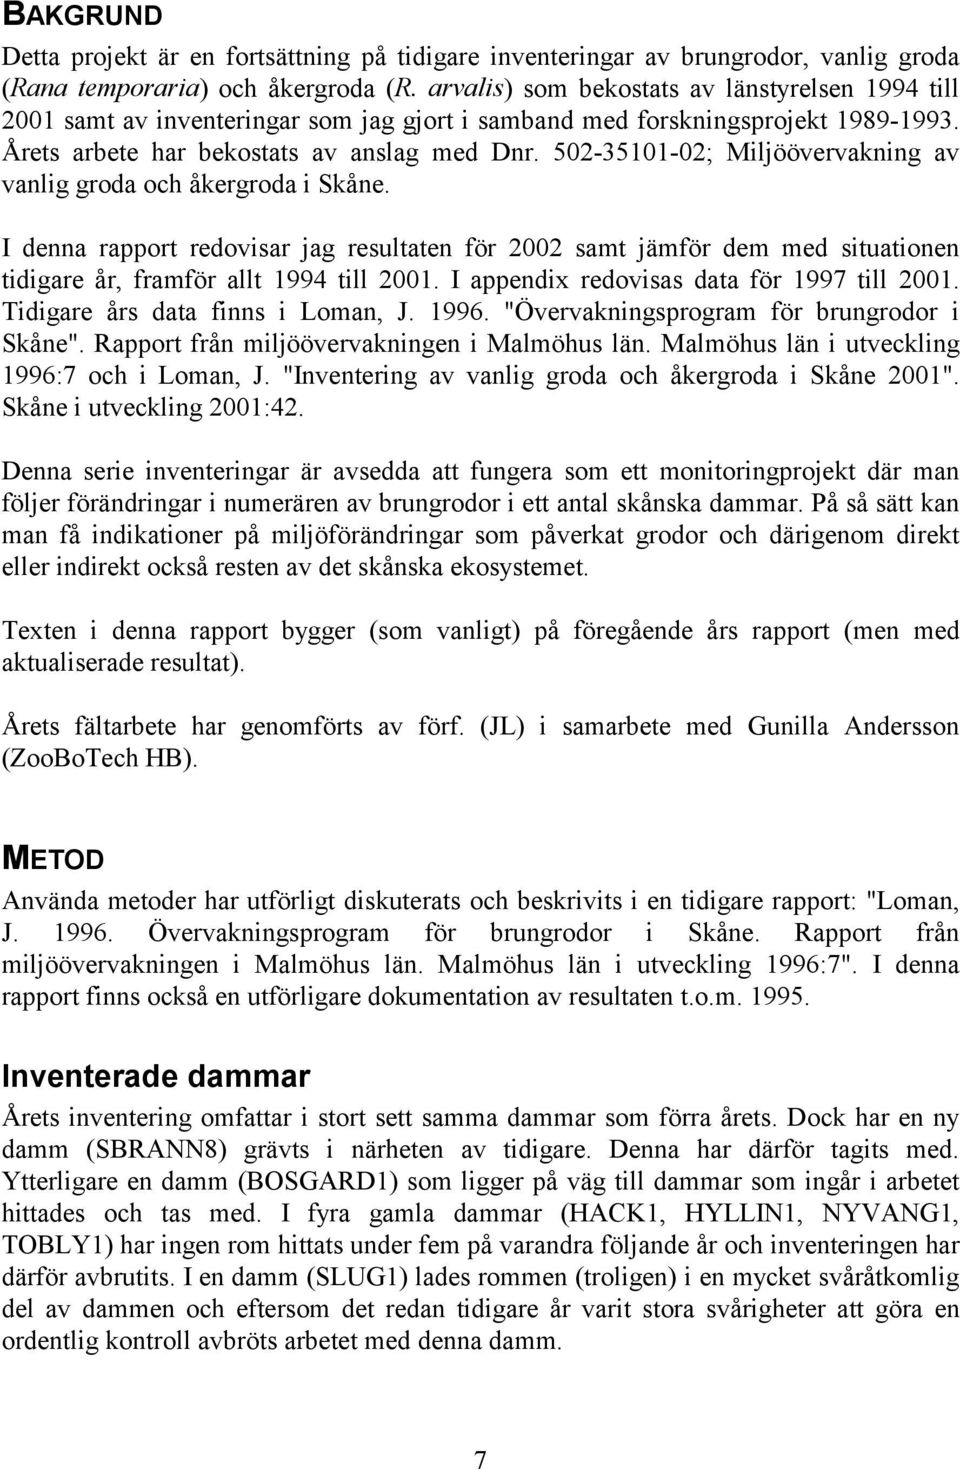 502-35101-02; Miljöövervakning av vanlig groda och åkergroda i Skåne. I denna rapport redovisar jag resultaten för 2002 samt jämför dem med situationen tidigare år, framför allt 1994 till 2001.